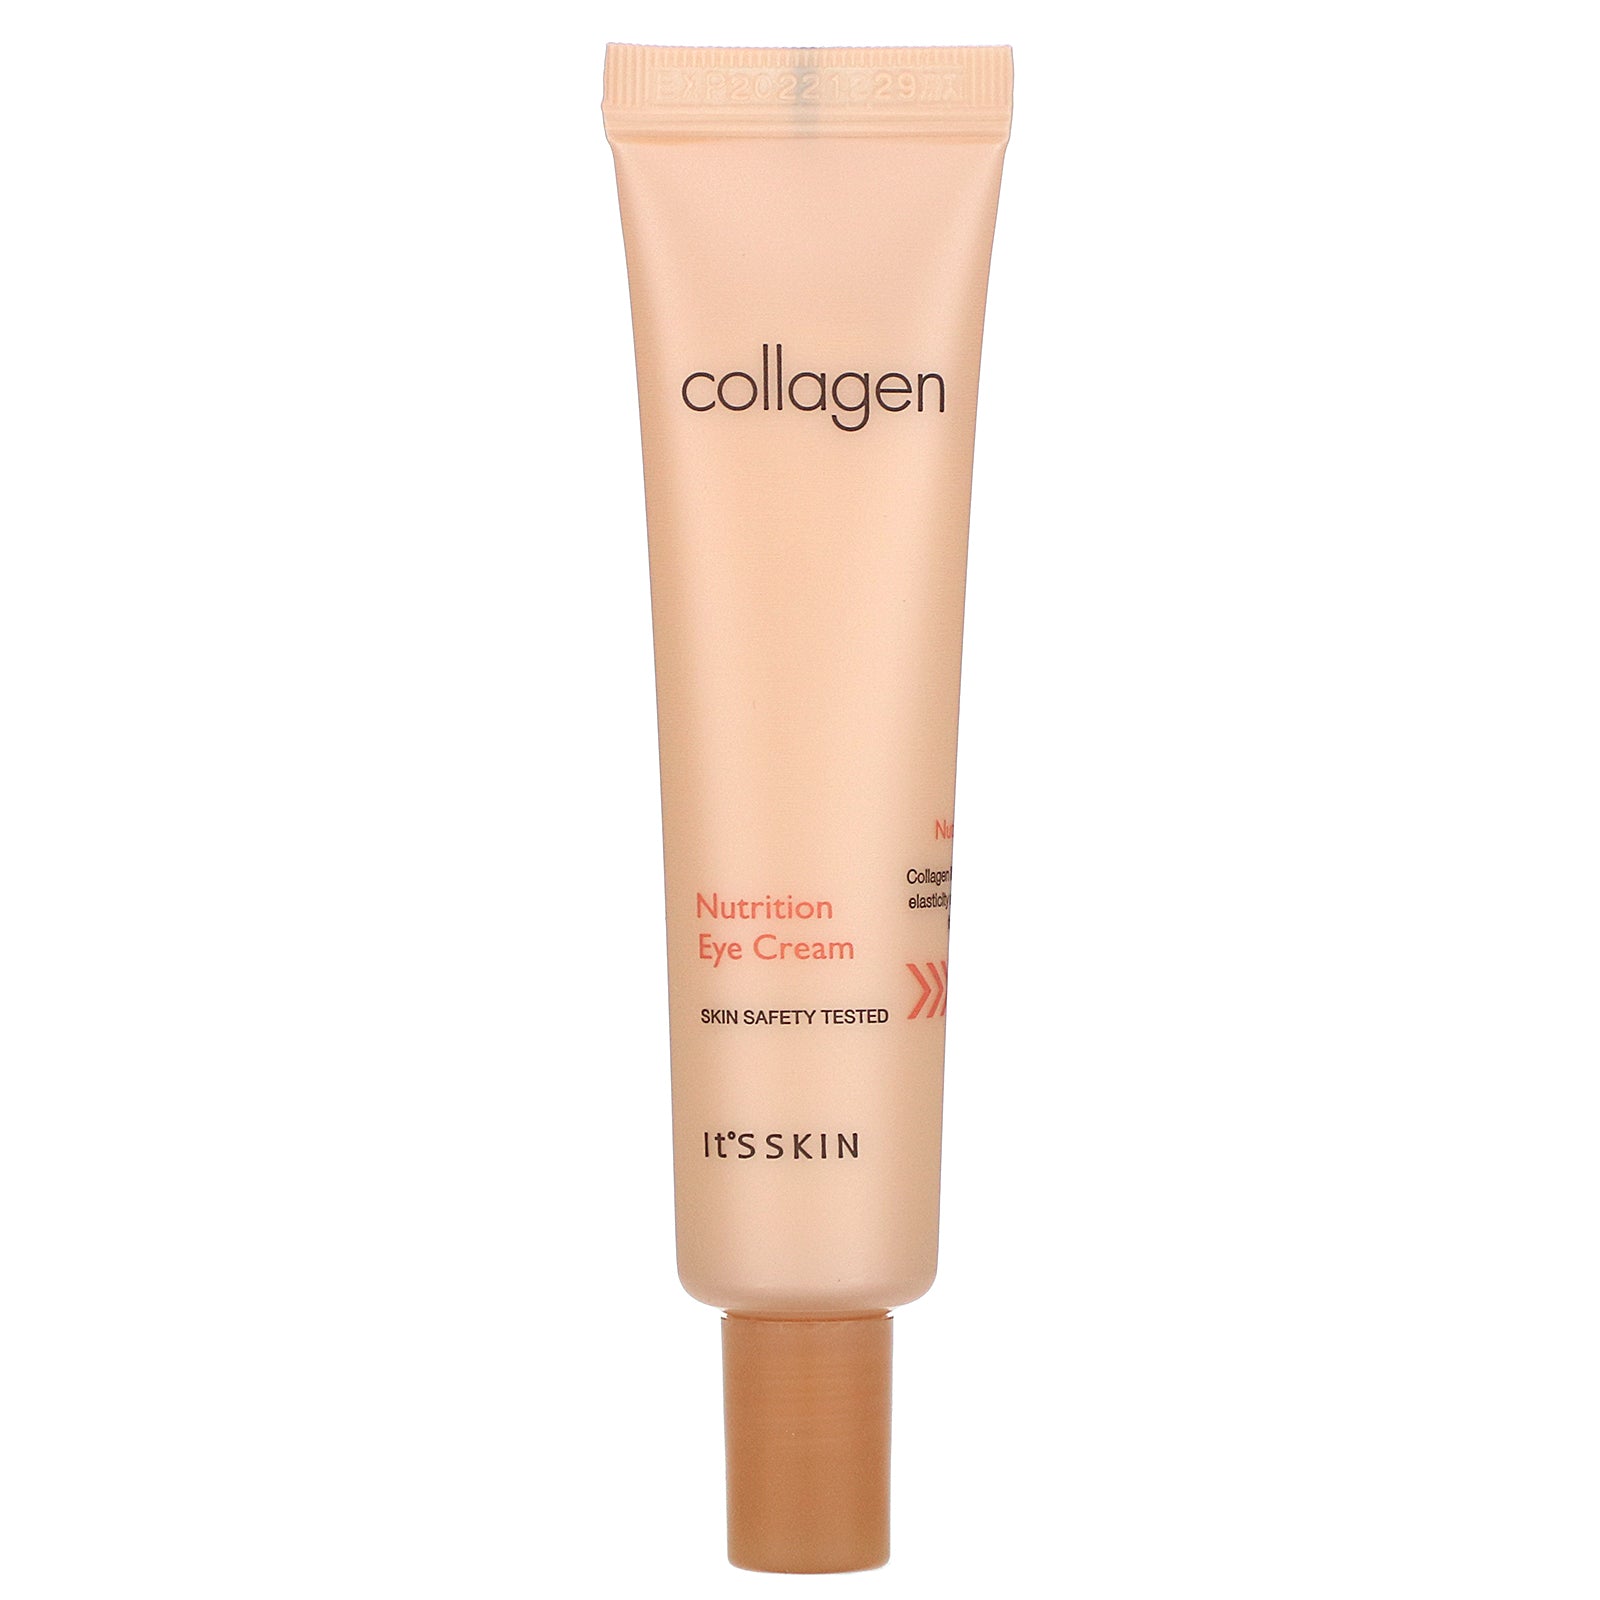 It's Skin, Collagen, Nutrition Eye Cream, 25 ml